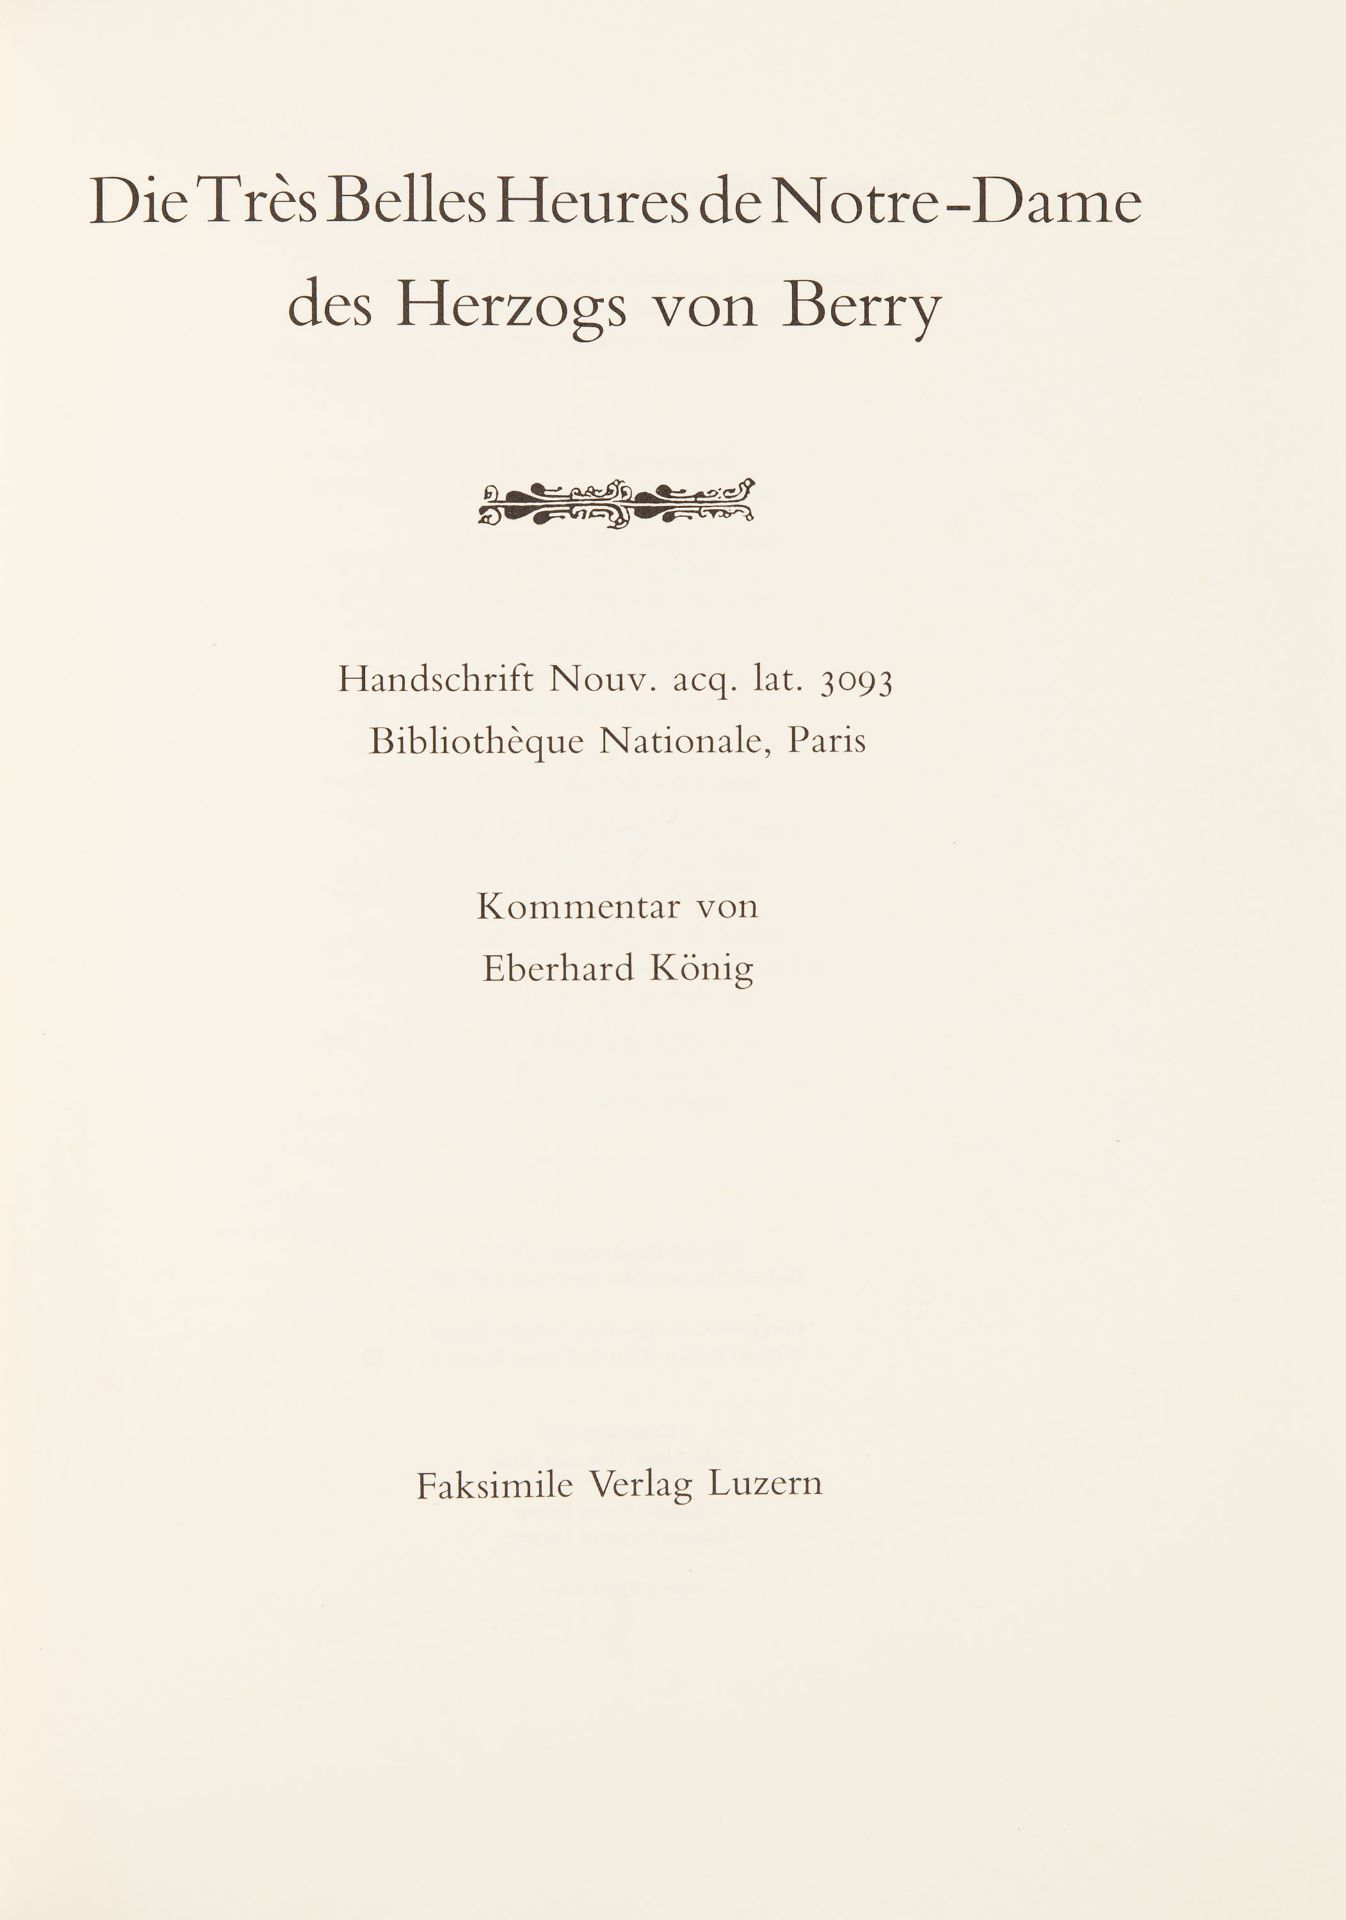 Les Très Belles Heures de Notre-Dame des Herzogs von Berry. Faksimile und Kommentar in 2 Bdn. in Ple - Bild 2 aus 3